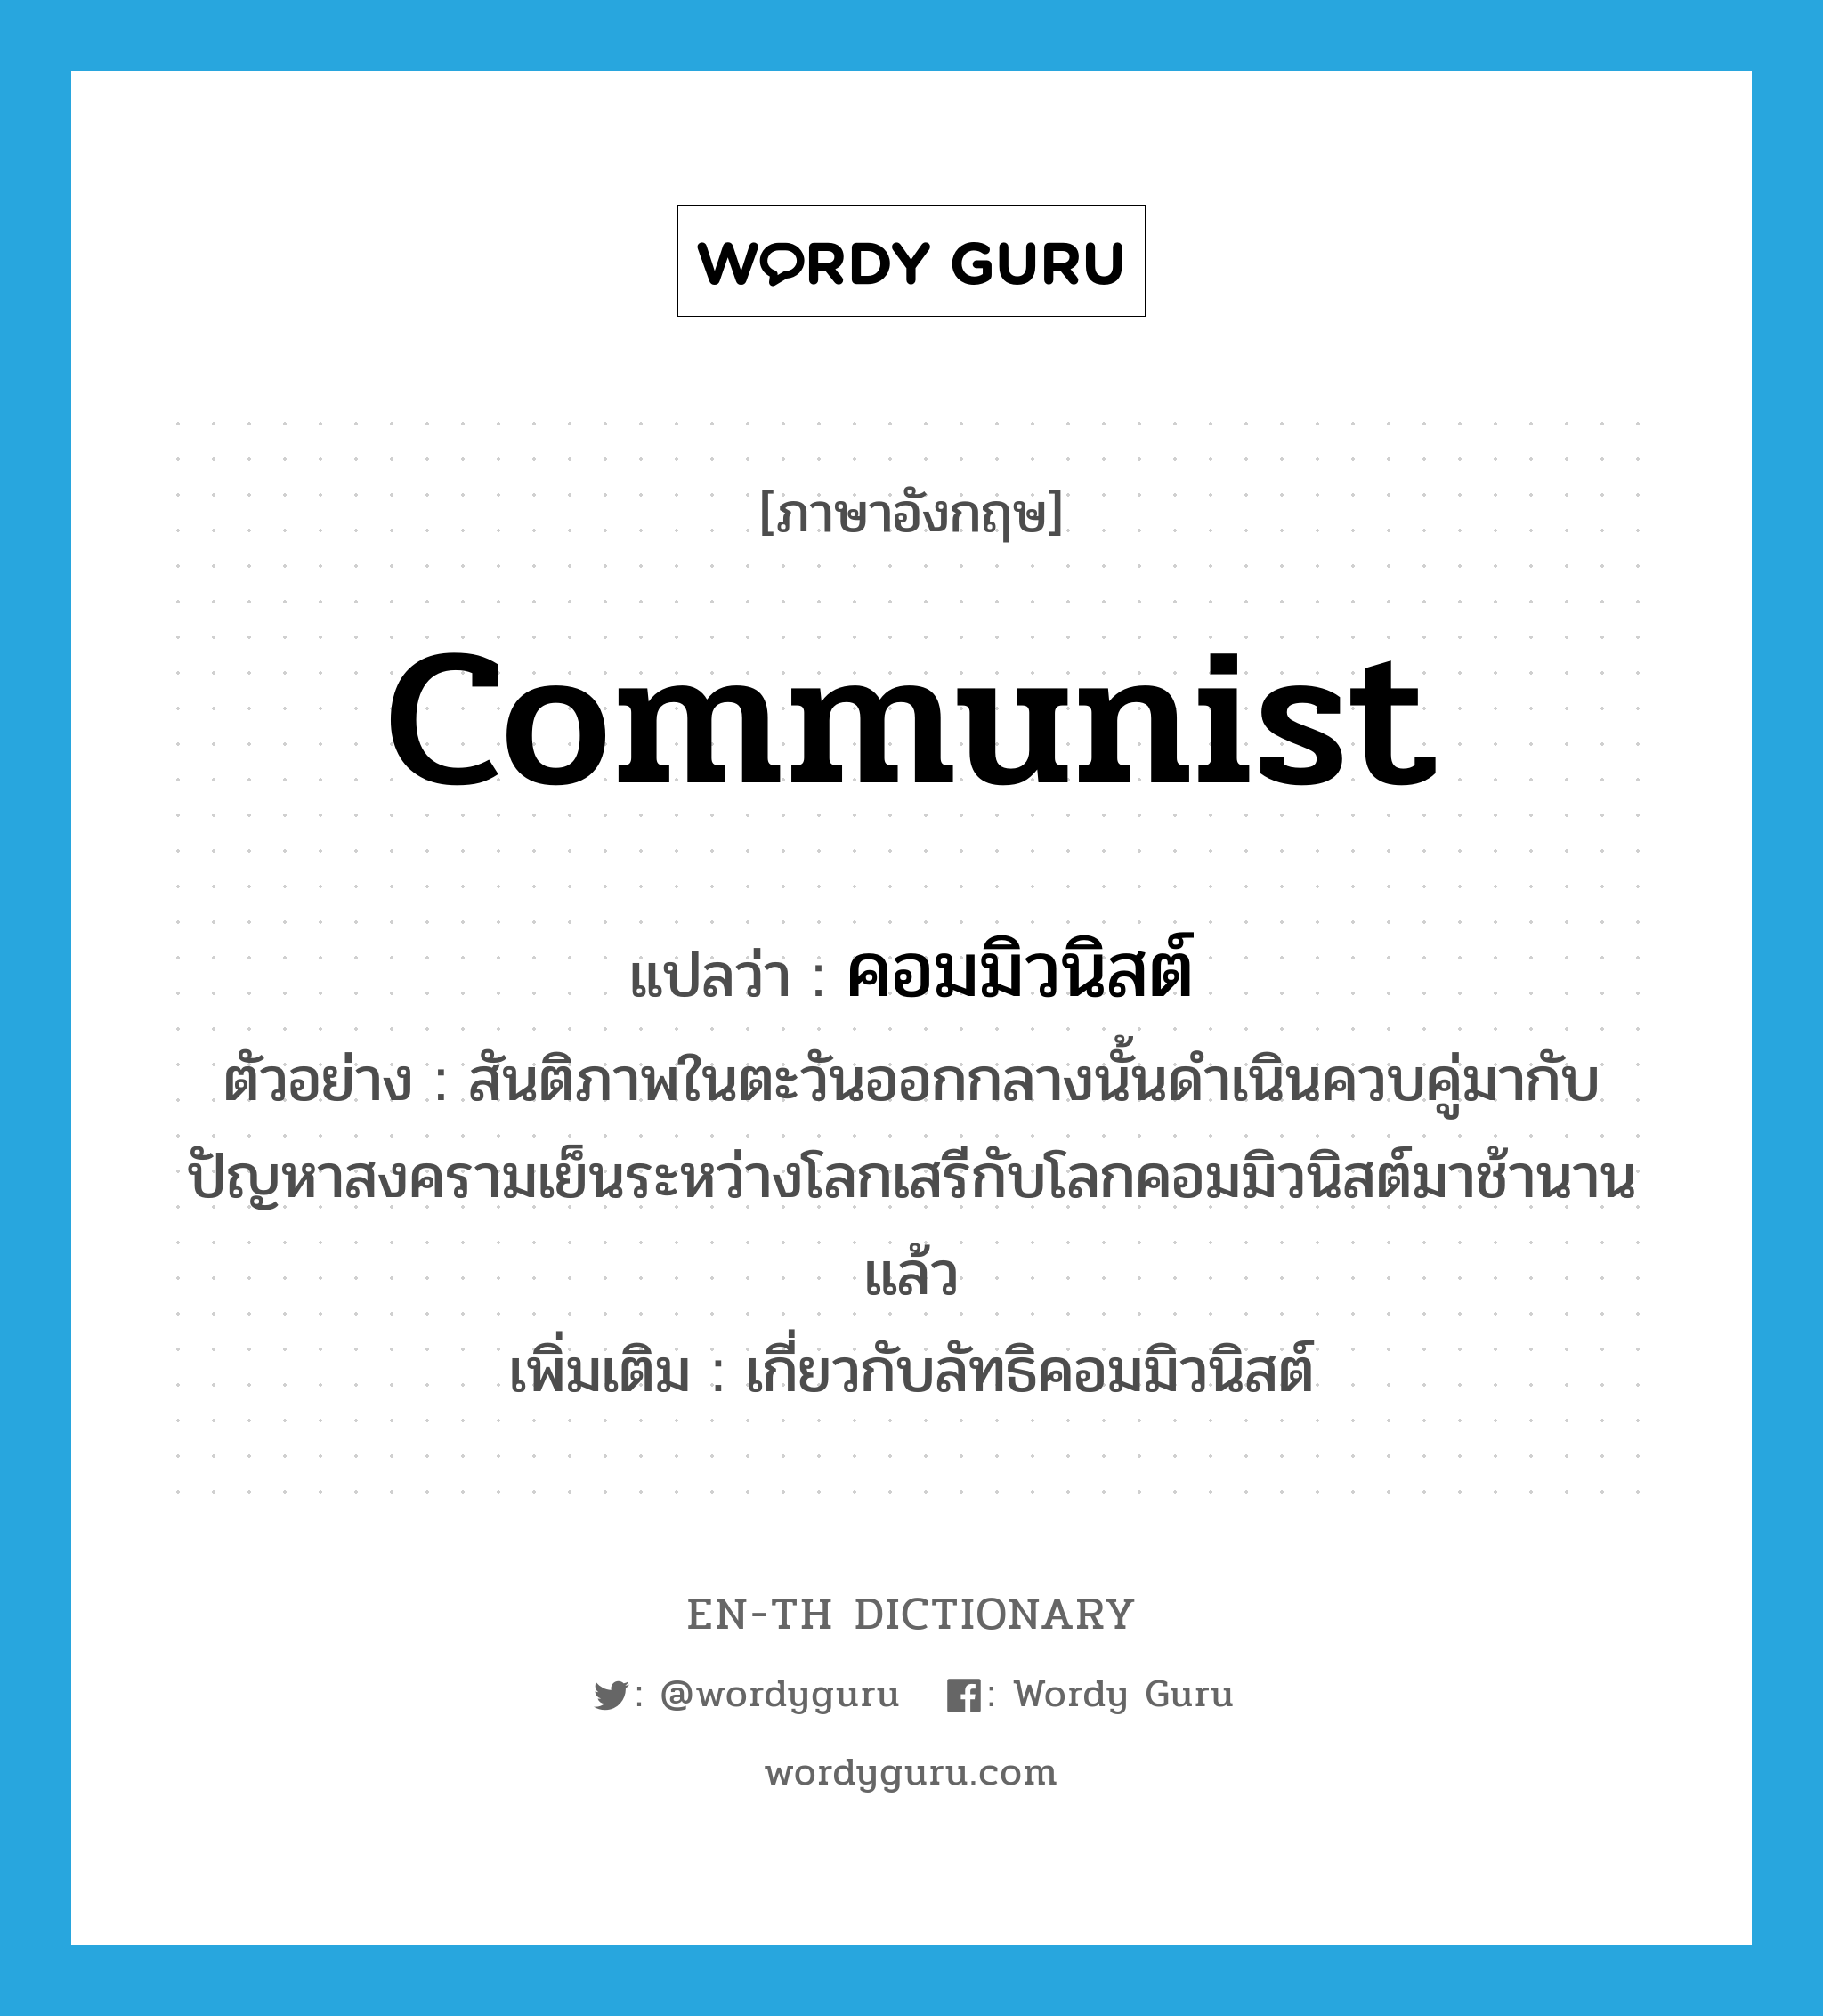 คอมมิวนิสต์ ภาษาอังกฤษ?, คำศัพท์ภาษาอังกฤษ คอมมิวนิสต์ แปลว่า communist ประเภท ADJ ตัวอย่าง สันติภาพในตะวันออกกลางนั้นดำเนินควบคู่มากับปัญหาสงครามเย็นระหว่างโลกเสรีกับโลกคอมมิวนิสต์มาช้านานแล้ว เพิ่มเติม เกี่ยวกับลัทธิคอมมิวนิสต์ หมวด ADJ